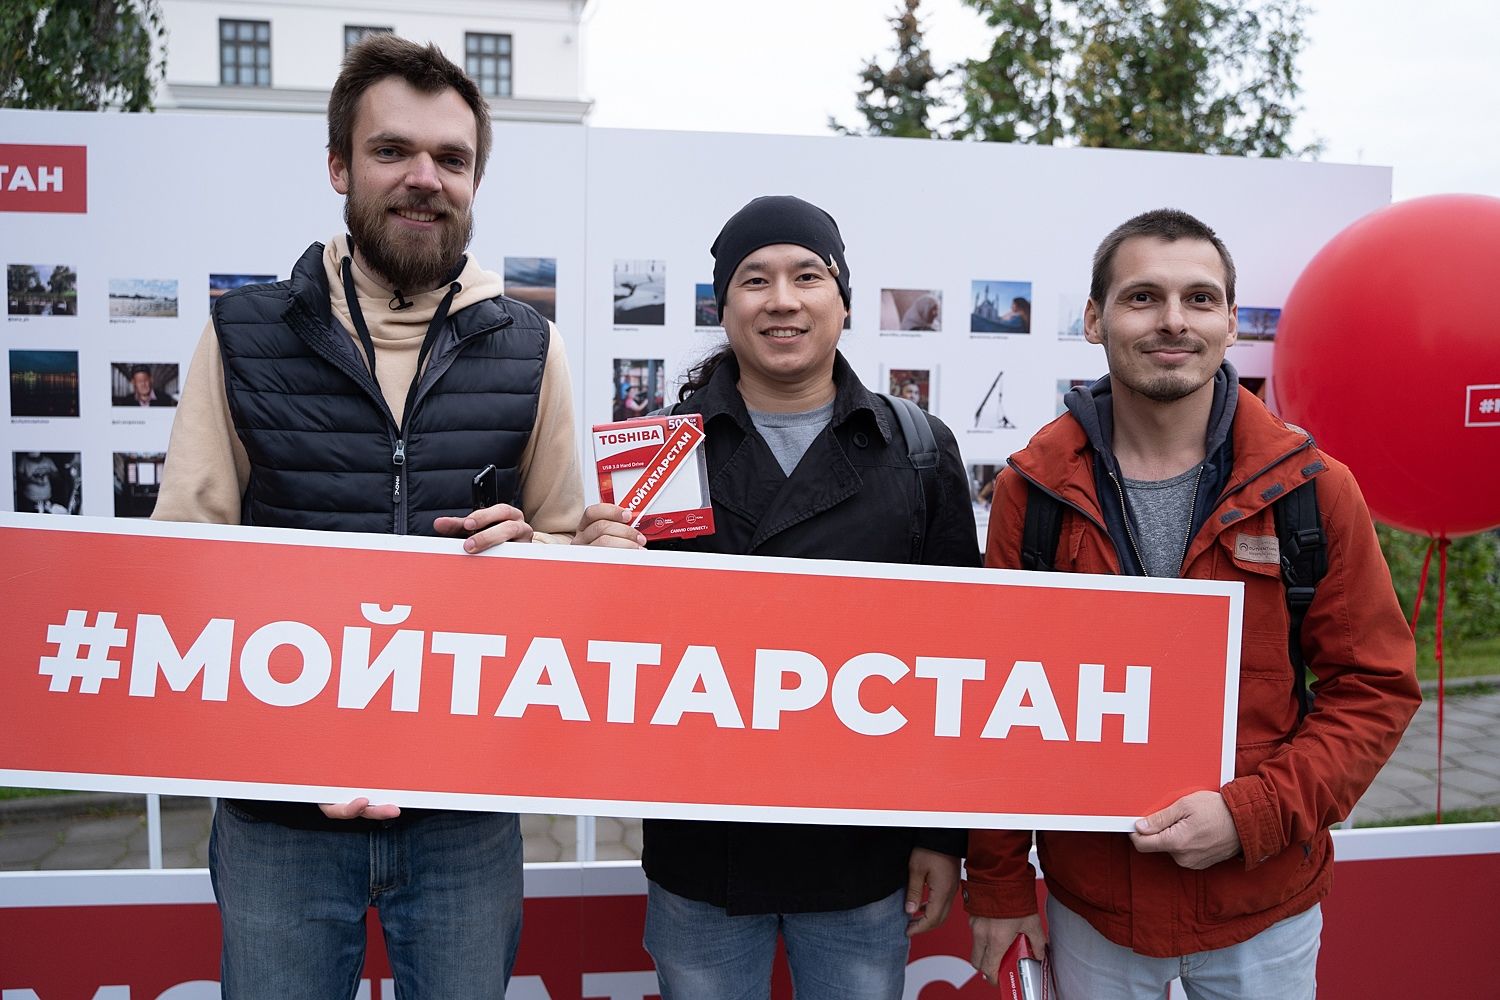 Жители Казани смогут посетить бесплатную фотовыставку&nbsp;#МойТатарстан&nbsp;